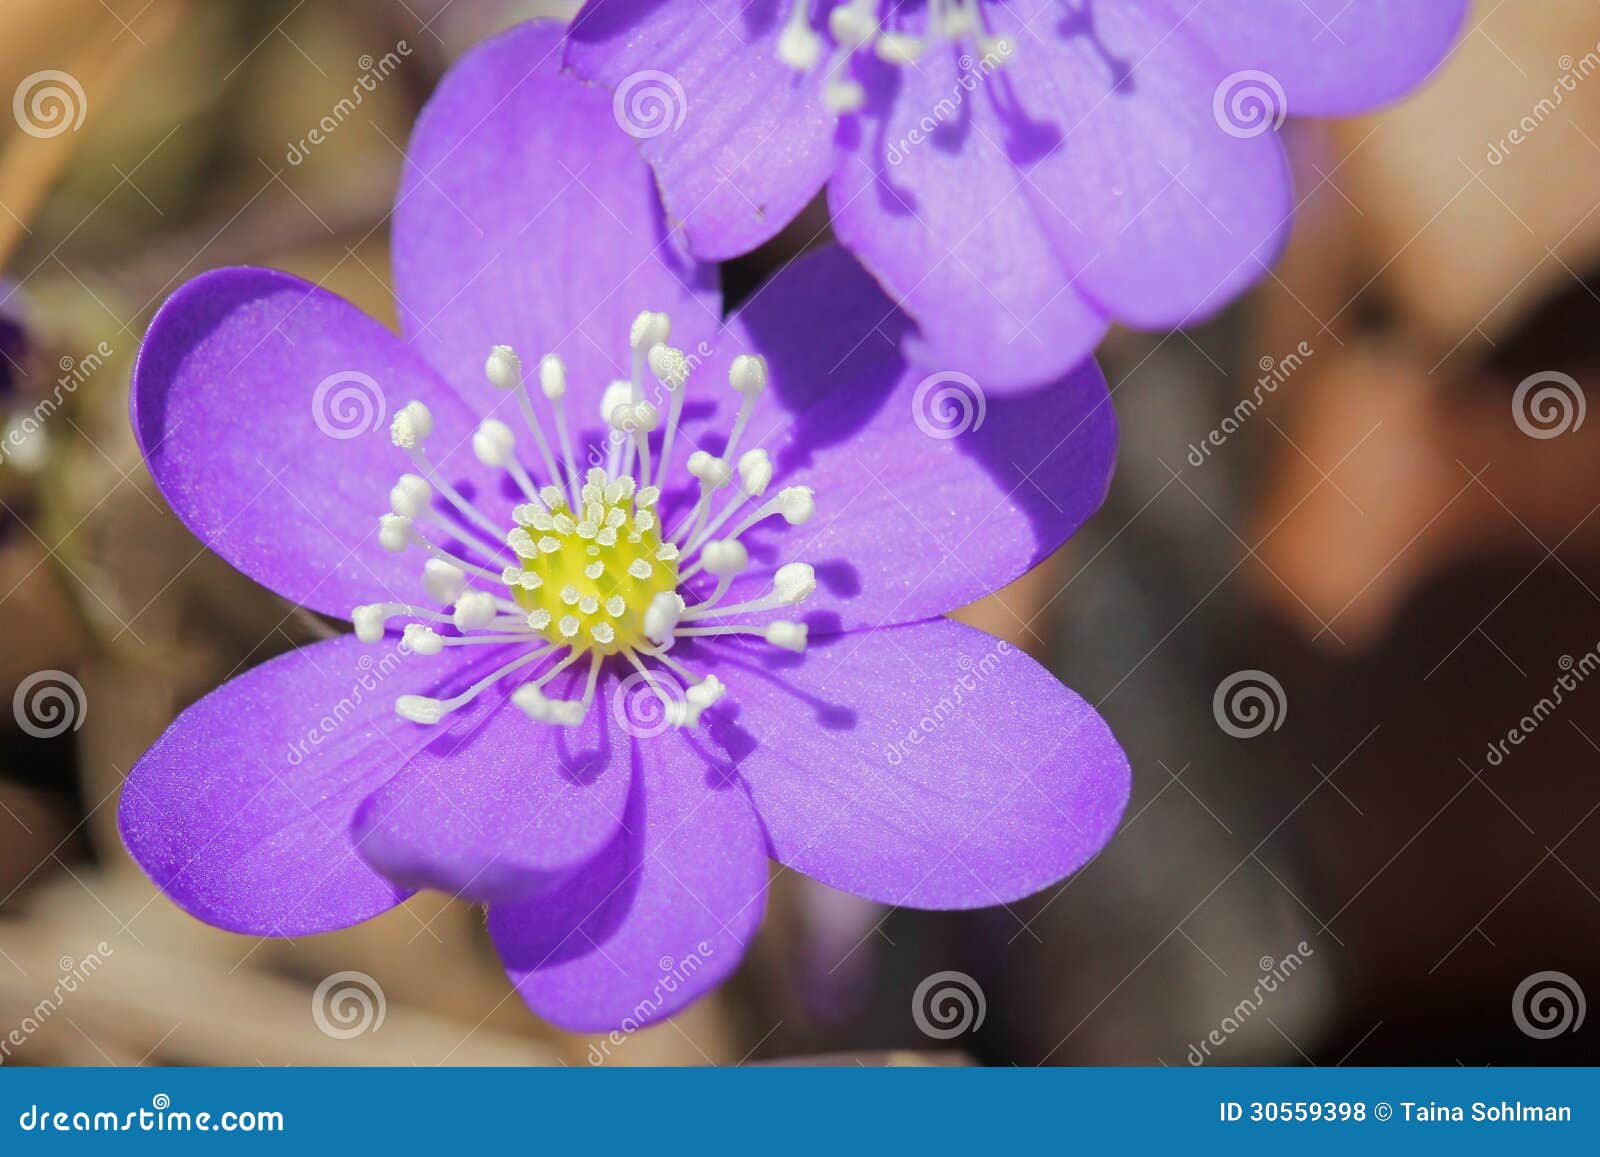 hepatica nobilis flower